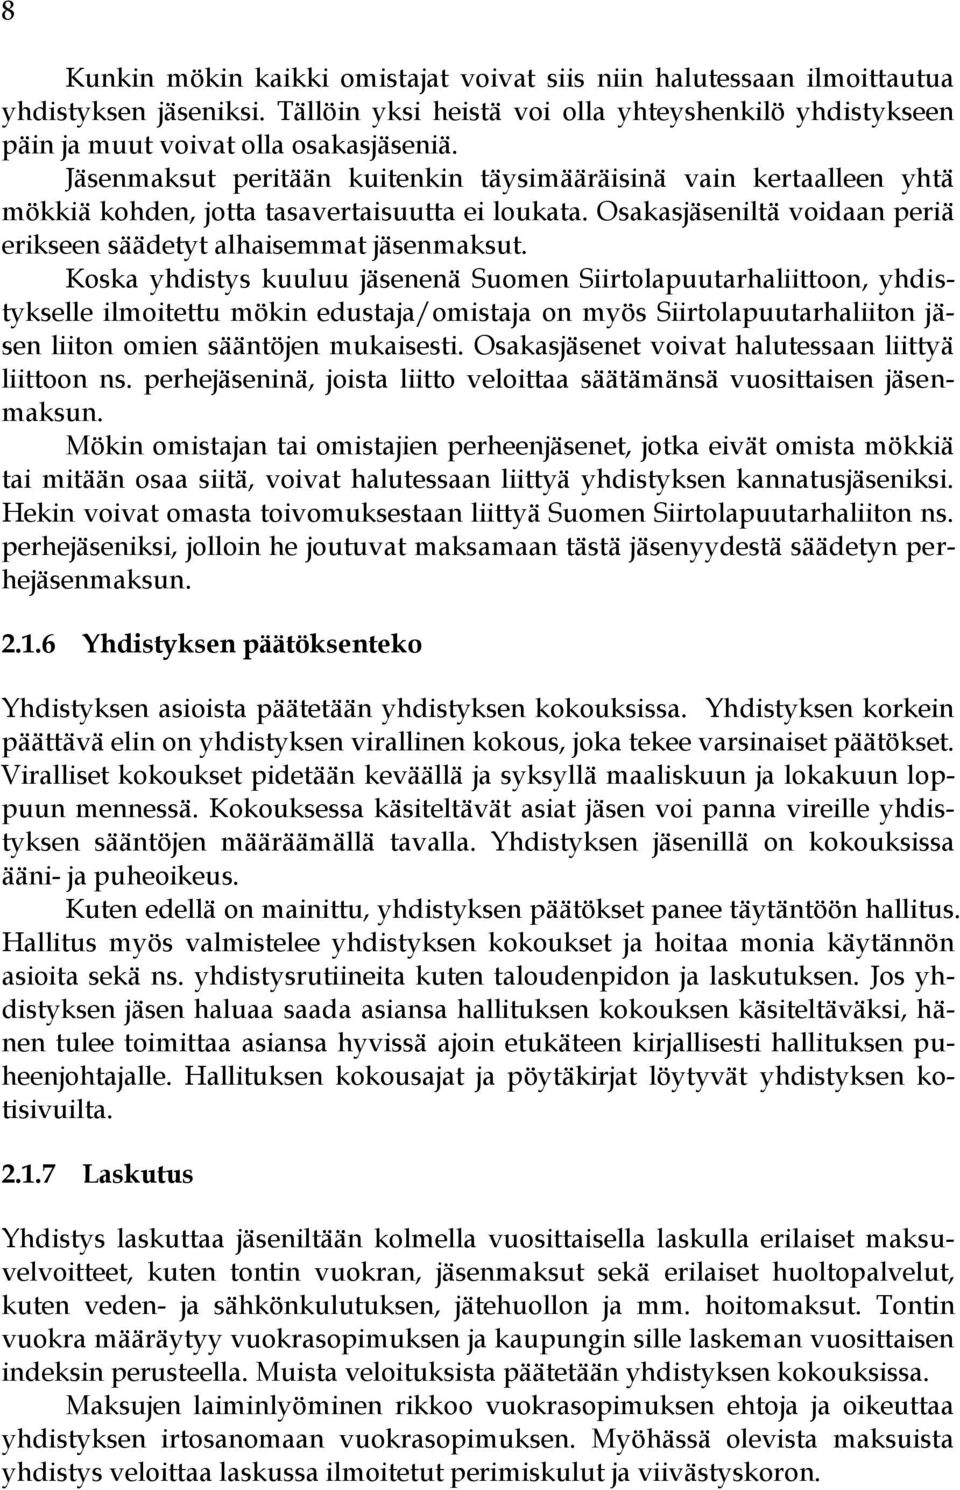 Koska yhdistys kuuluu jäsenenä Suomen Siirtolapuutarhaliittoon, yhdistykselle ilmoitettu mökin edustaja/omistaja on myös Siirtolapuutarhaliiton jäsen liiton omien sääntöjen mukaisesti.